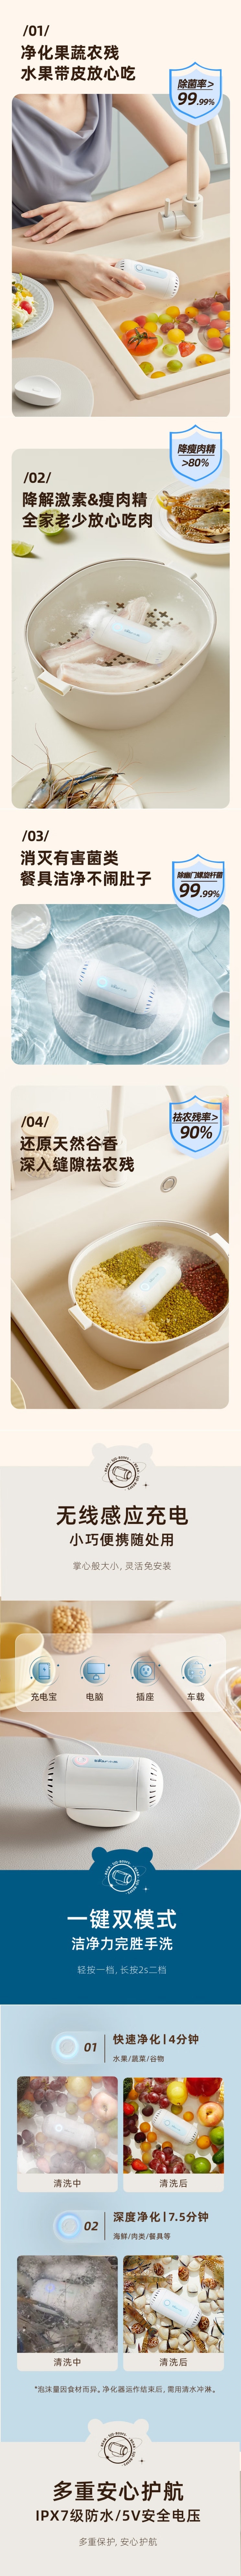 【中国直邮】Bear小熊 果蔬清洗机洗菜机 蔬菜食物净化 双头净化杀菌灭菌机